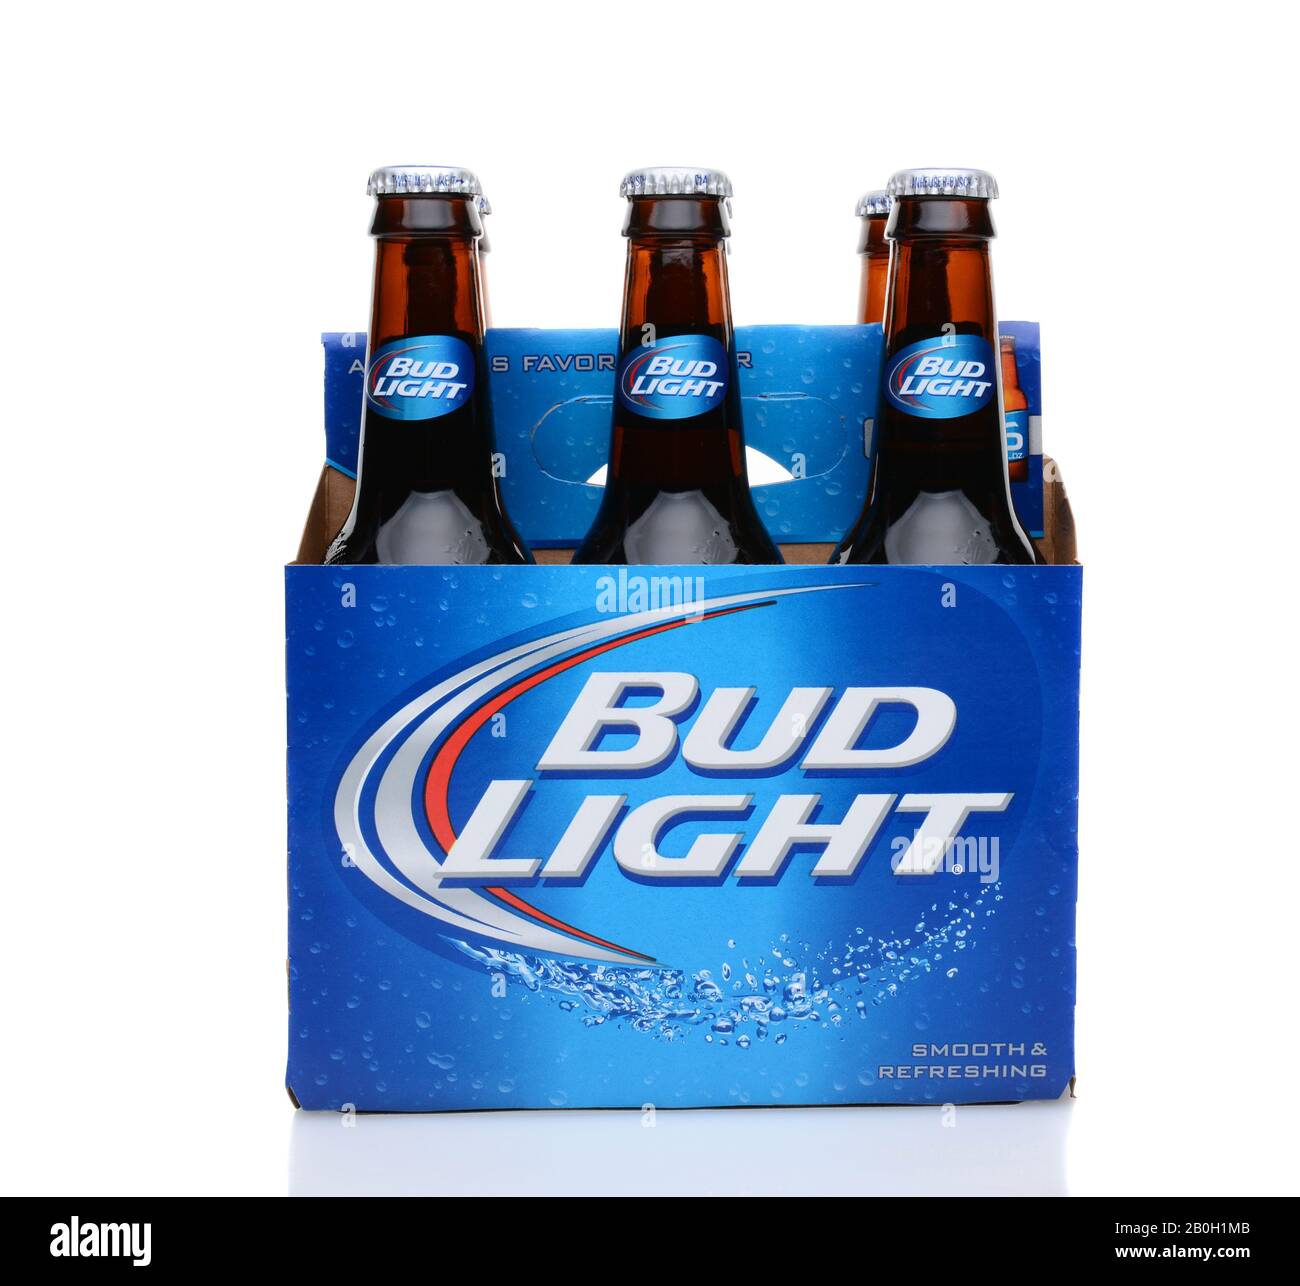 Irvine, CA - 25 MAI 2014 : un lot de 6 bières Bud Light. D'Anheuser-Busch InBev, Bud Light est le numéro qui vend une bière domestique dans la United Stat Banque D'Images